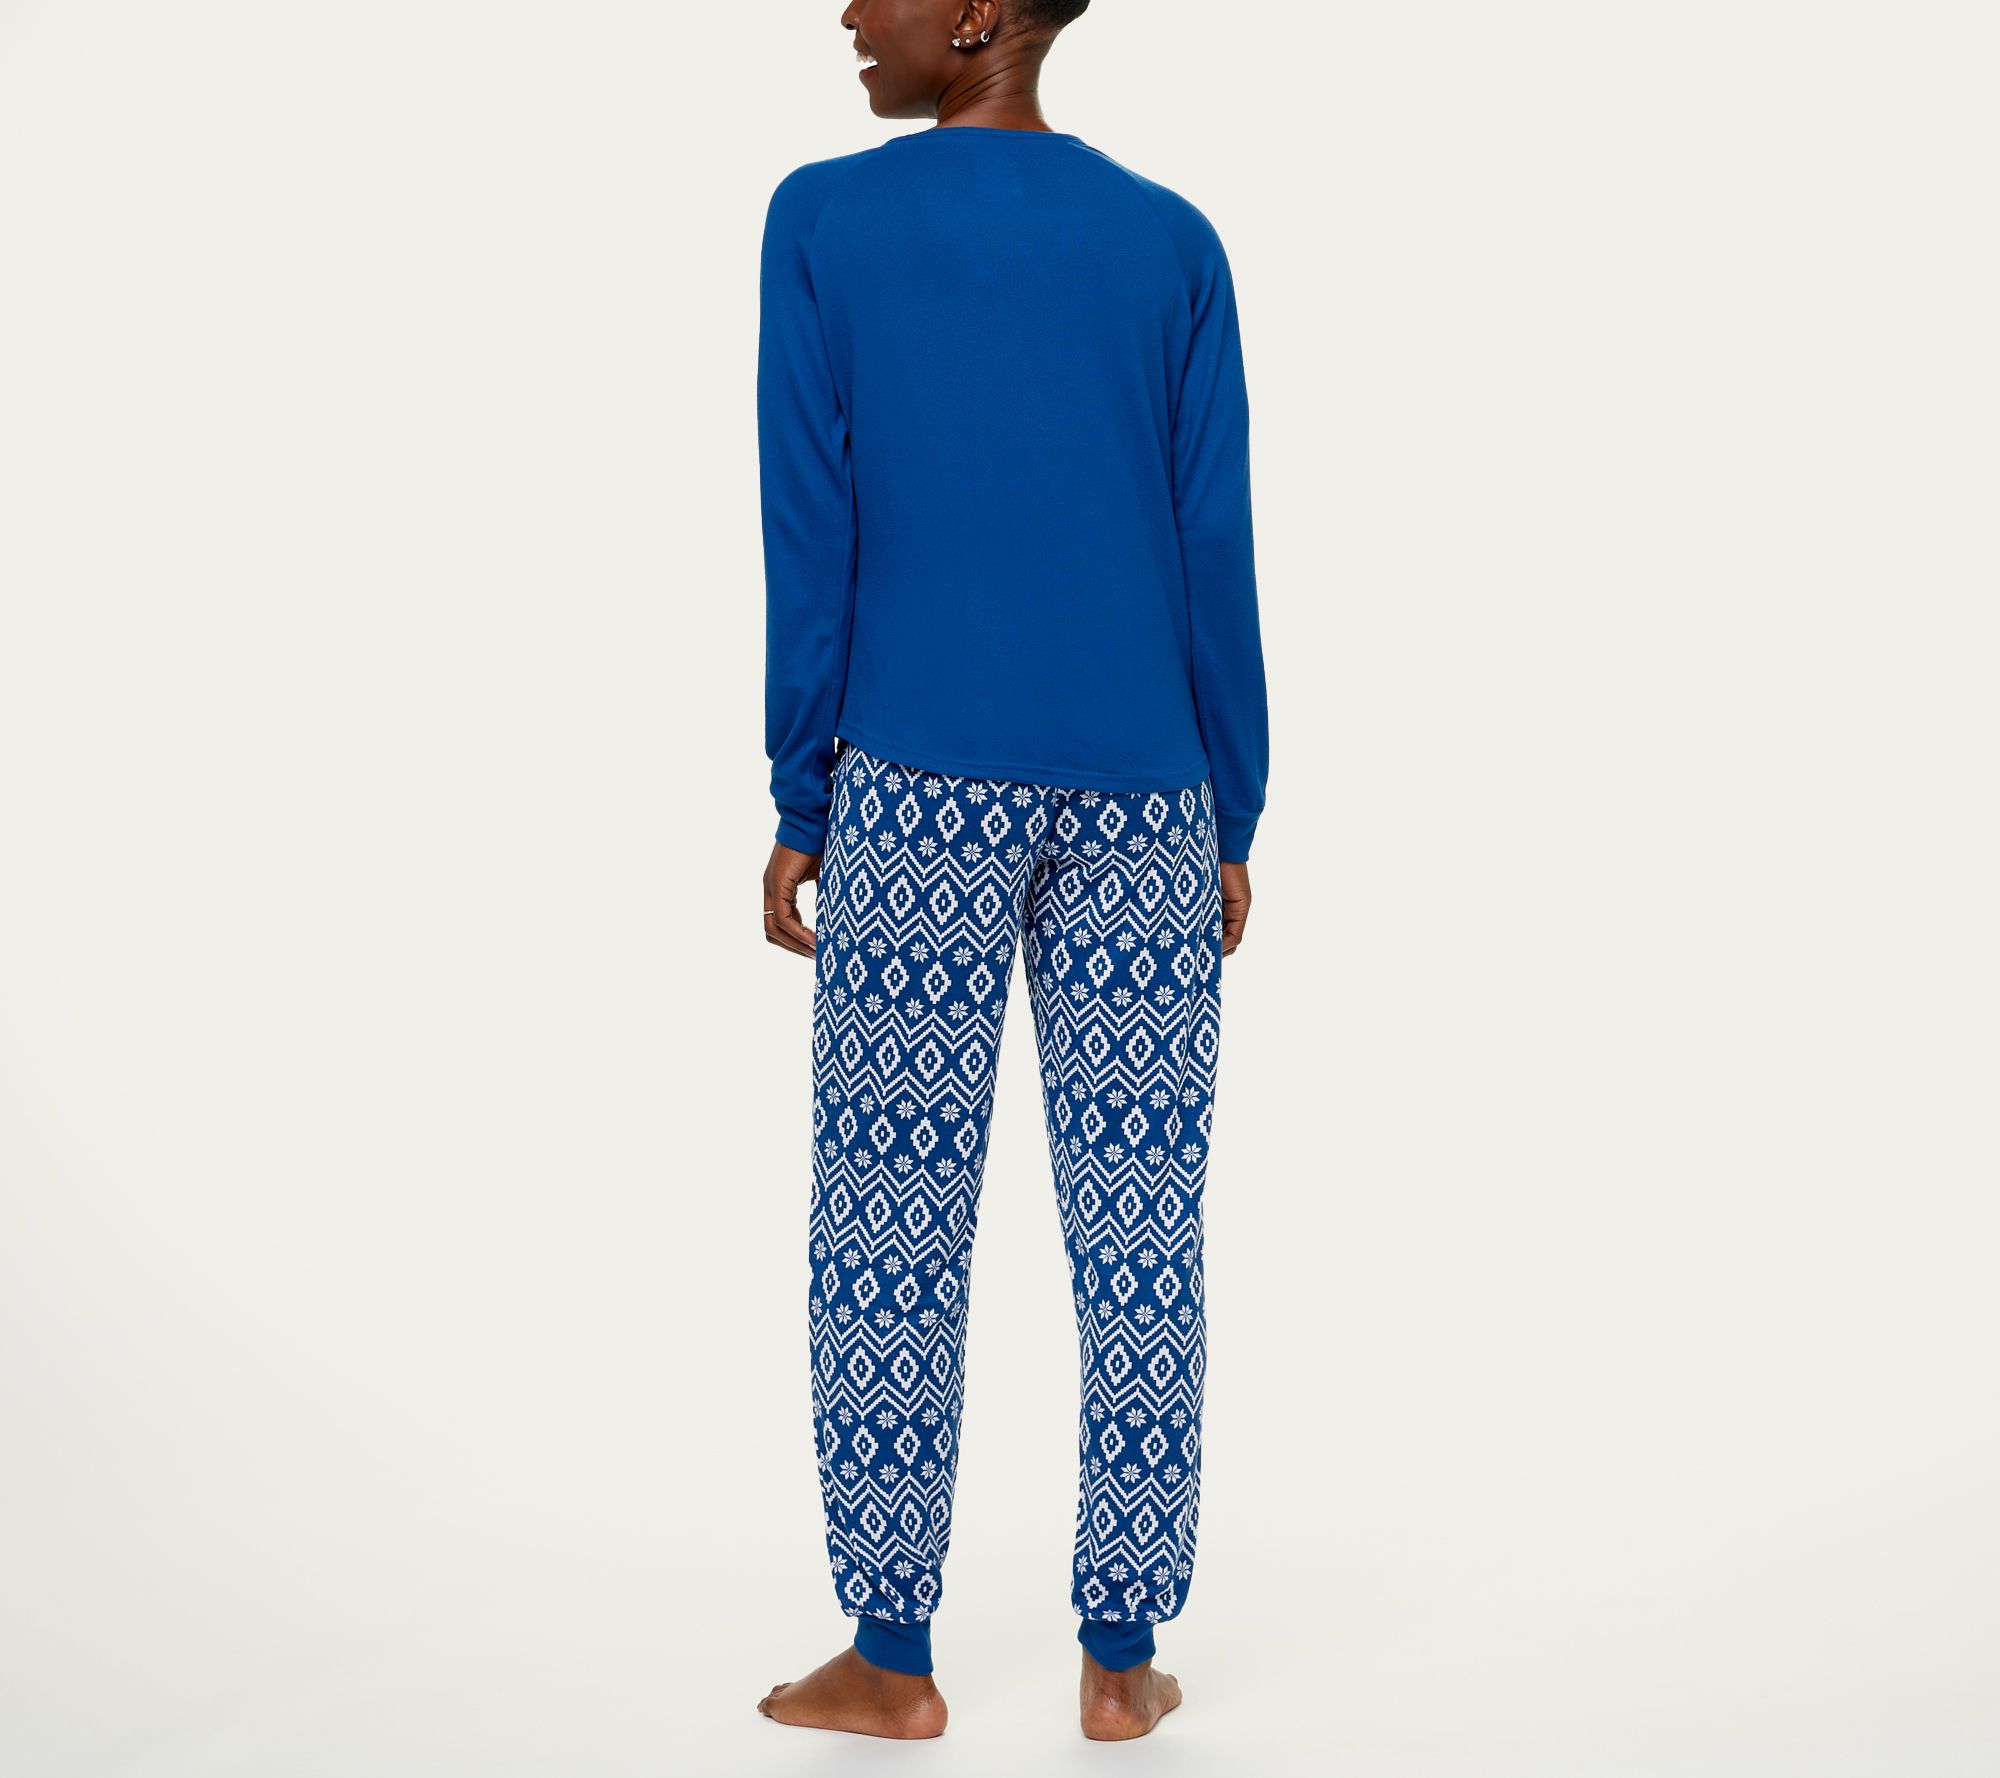 MUK LUKS Women's Tall Butter Knit Matching Pajama Set 